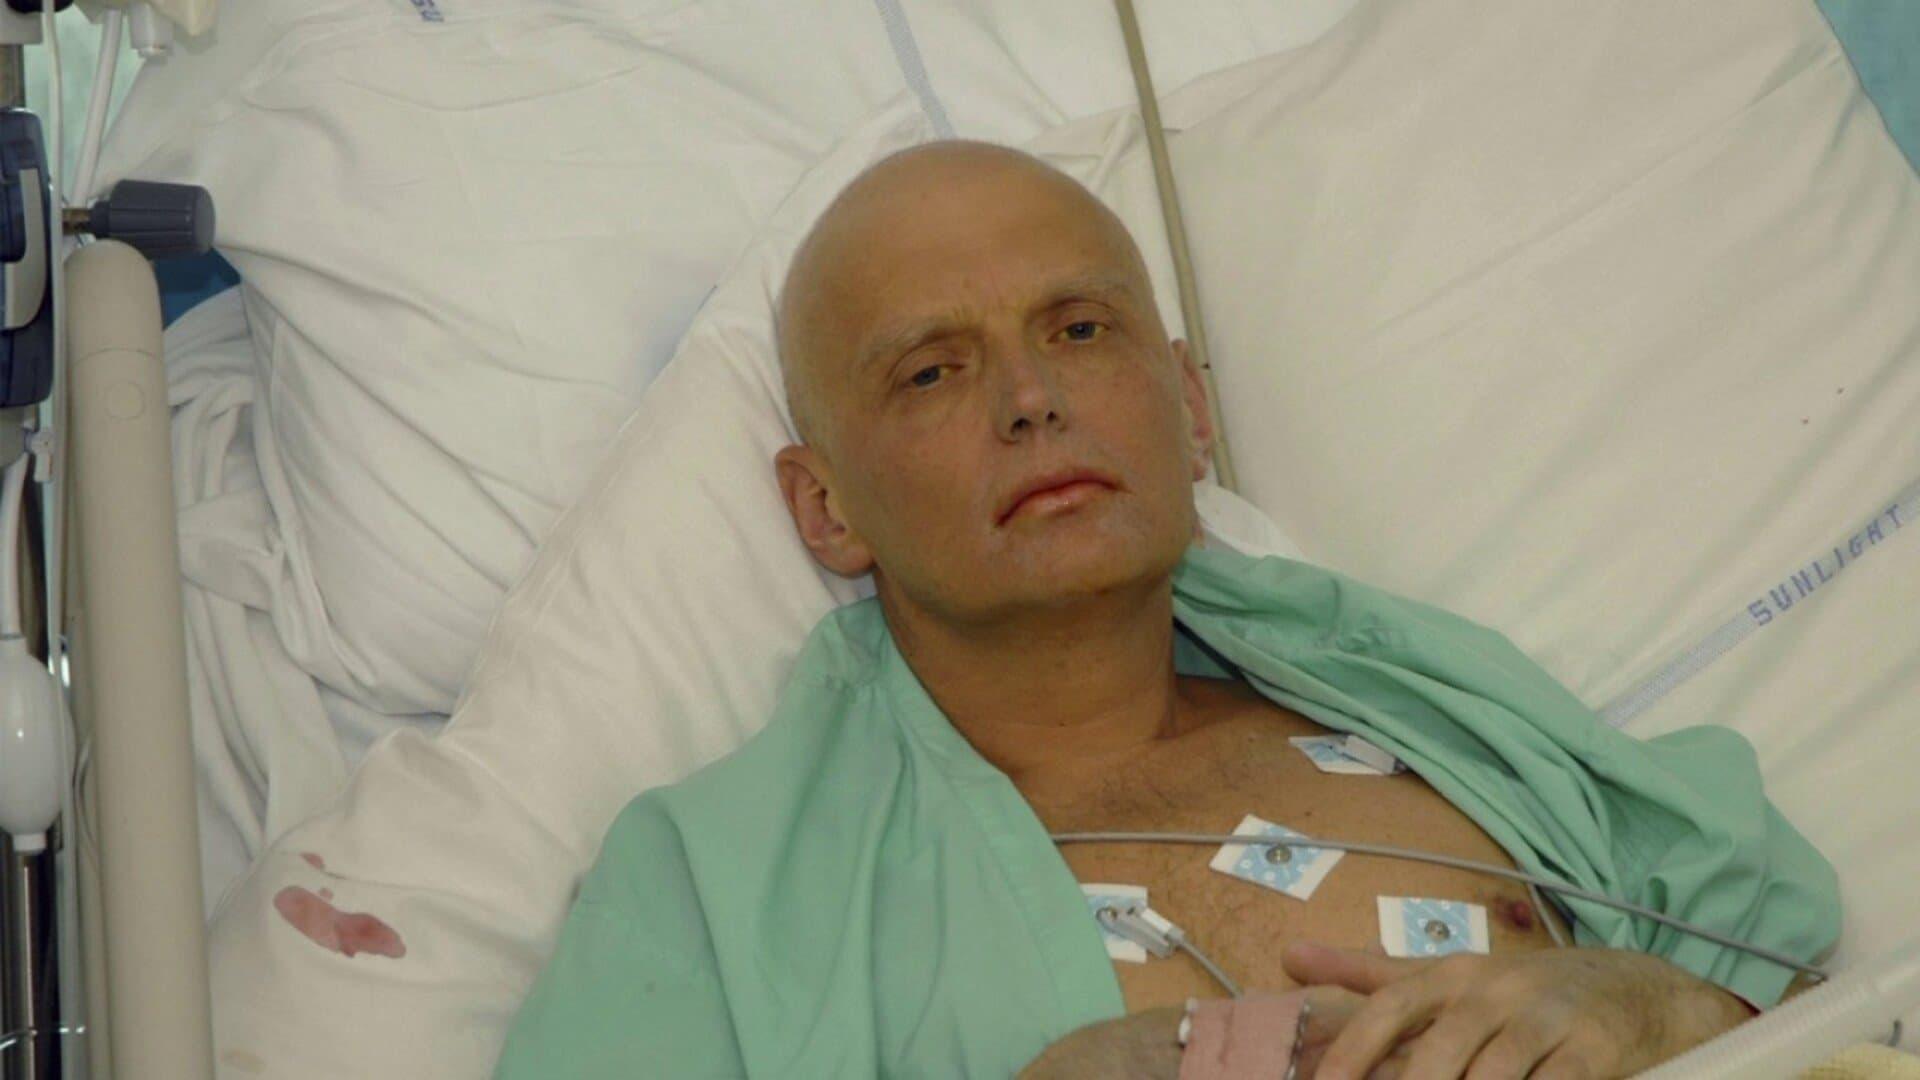 Litvinenko: The Mayfair Poisoning backdrop